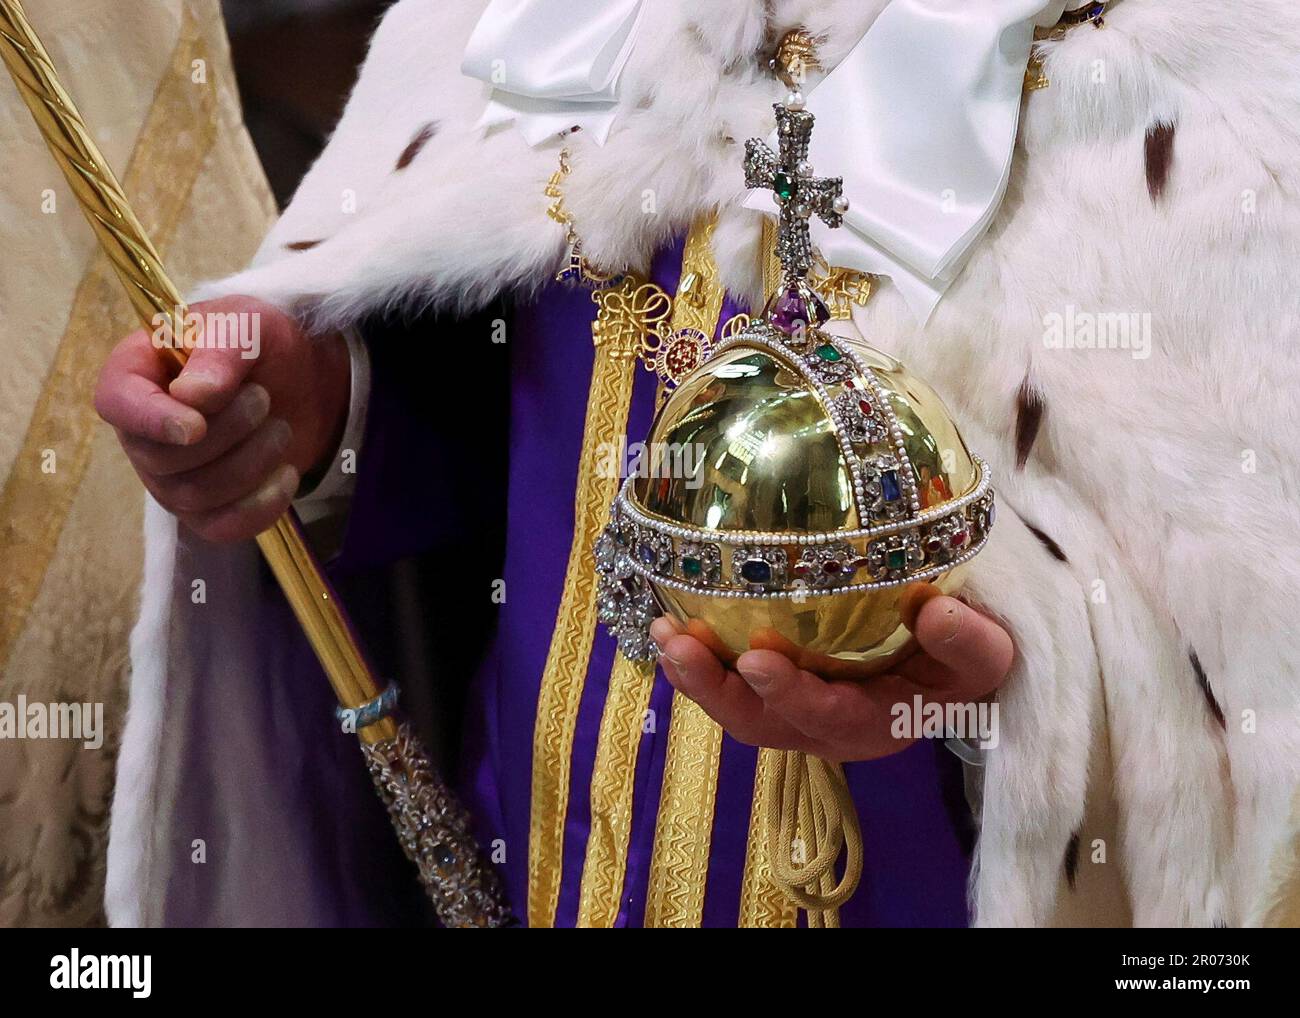 König Karl III. Hält während seiner Krönungszeremonie in Westminster Abbey, London, den Orb des Herrschers. Foto: Samstag, 6. Mai 2023. Stockfoto